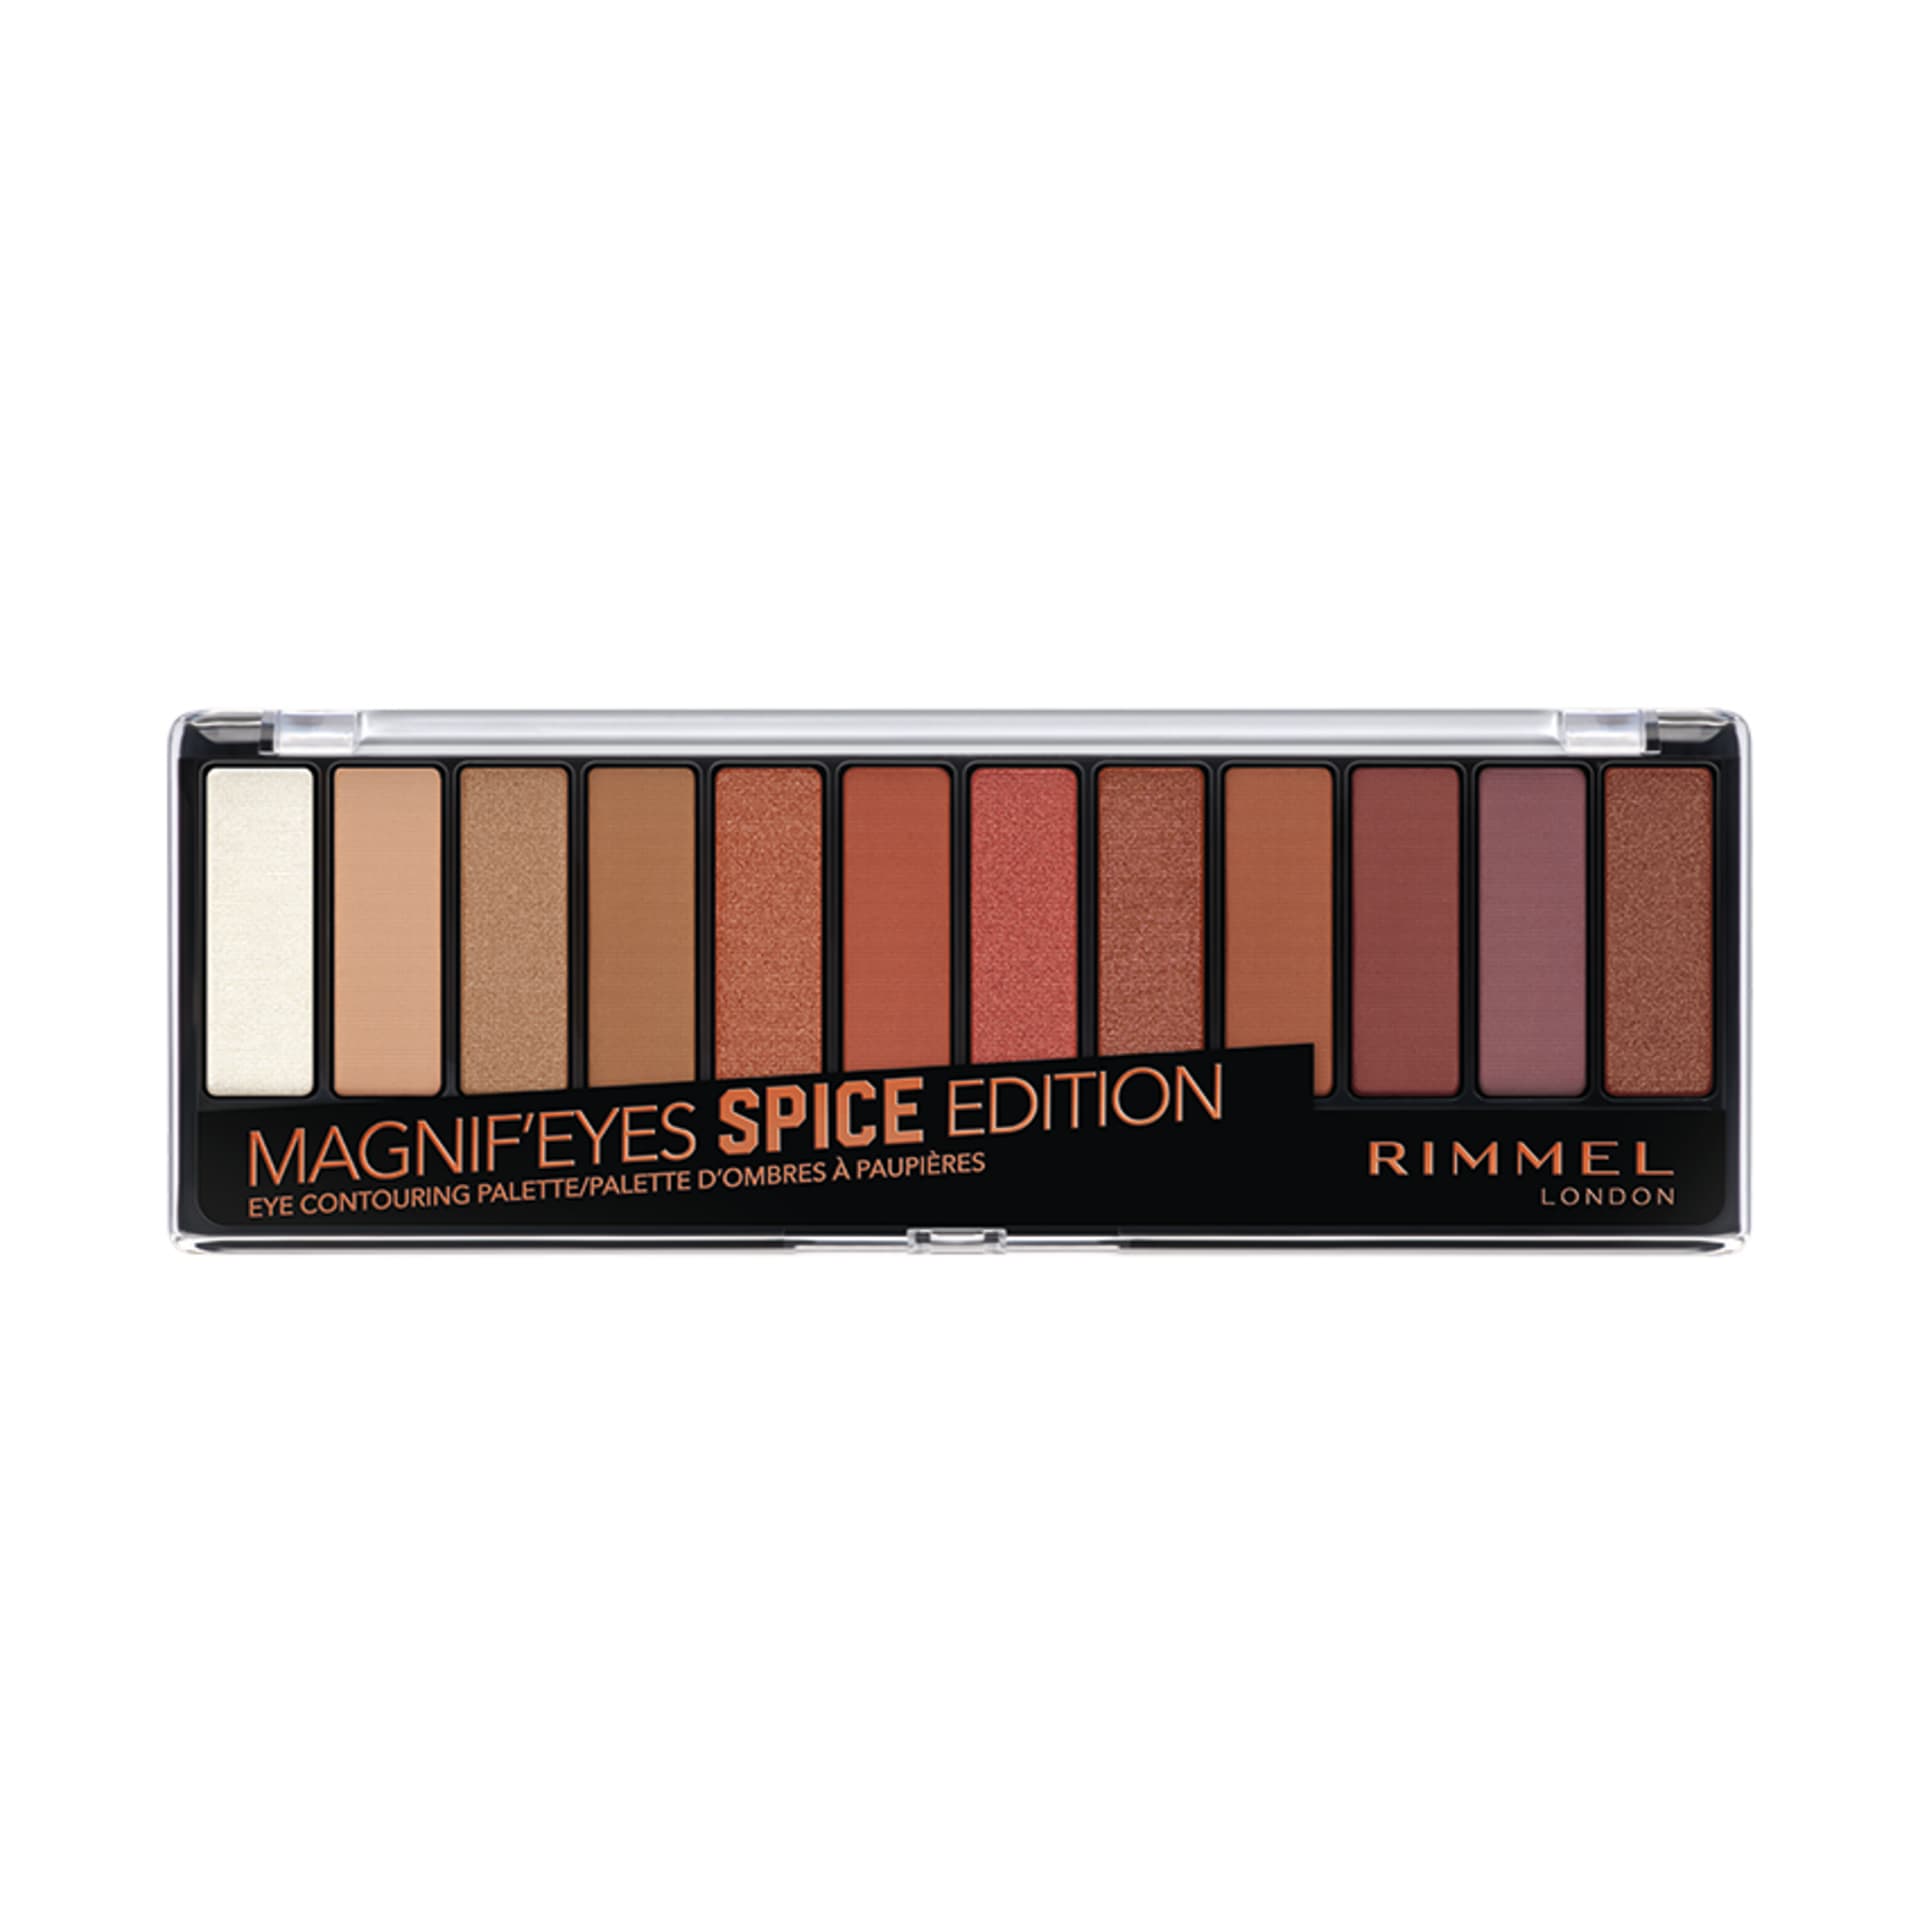 Magnif'eyes Eyeshadow Palette 05 Spice Edition - MazenOnline